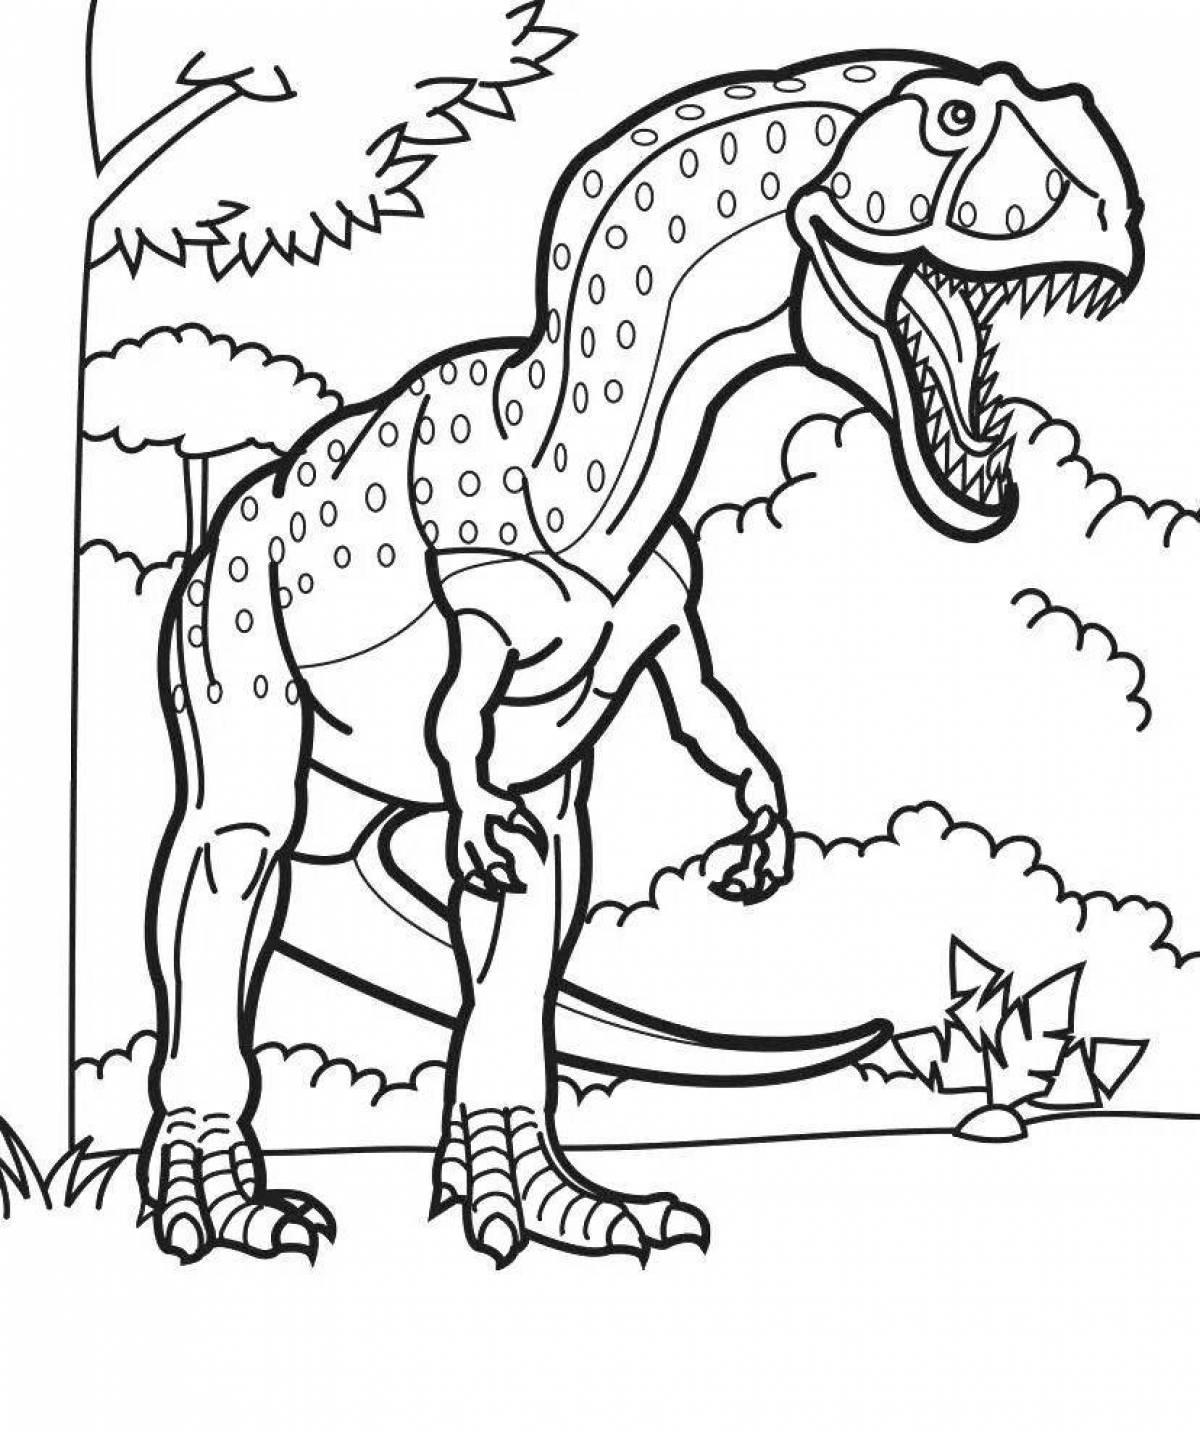 Увлекательная раскраска с изображением динозавров